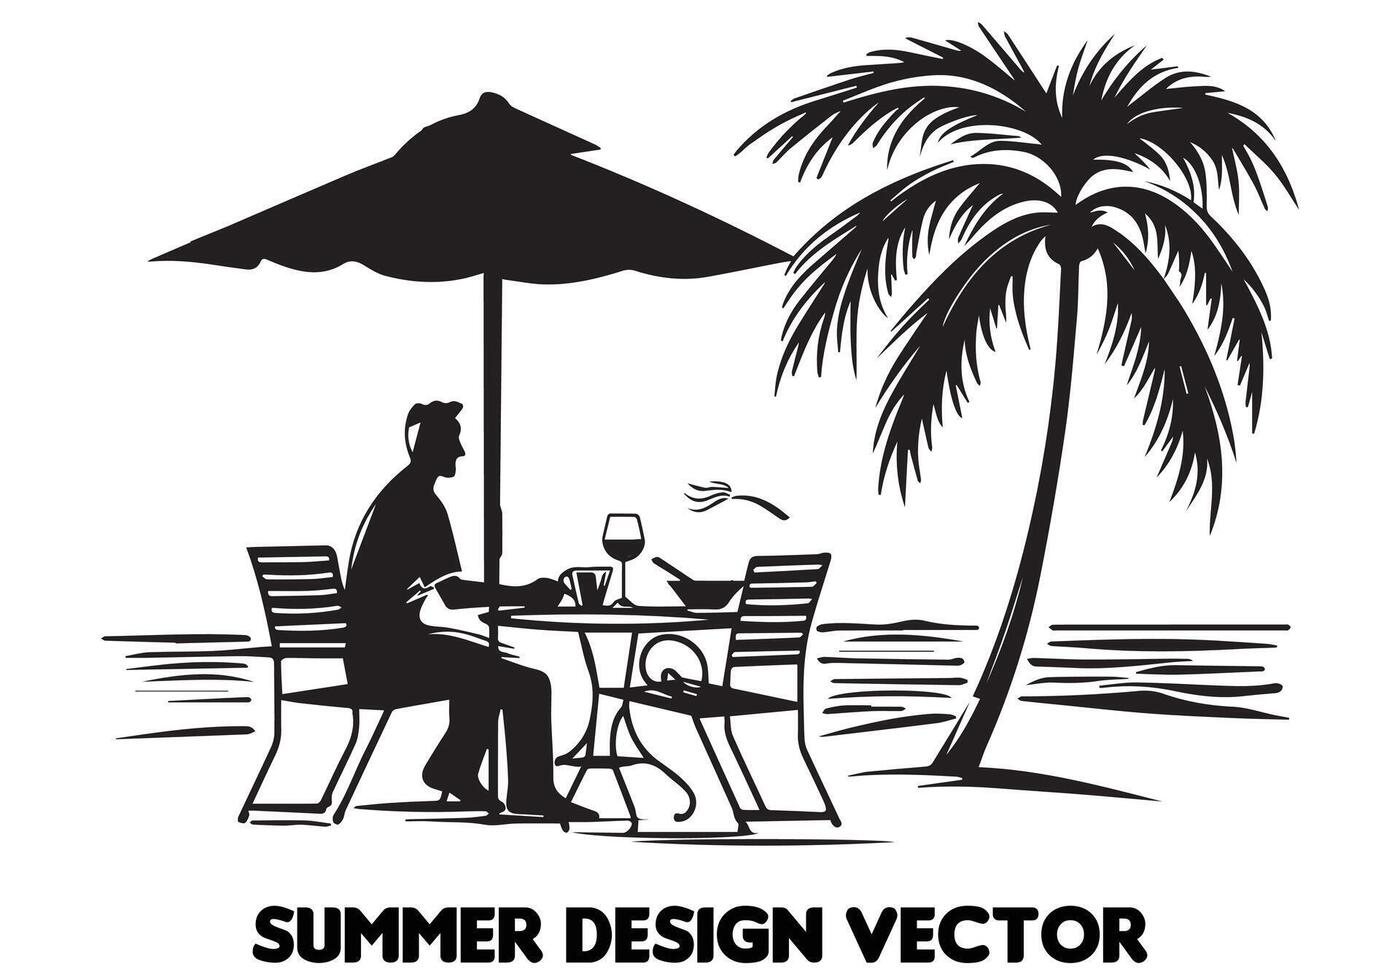 sommar design handflatan träd Sammanträde på stol främre tabell och paraply man strand för skriva ut på efterfrågan svart djärv enkel översikt fri design vektor